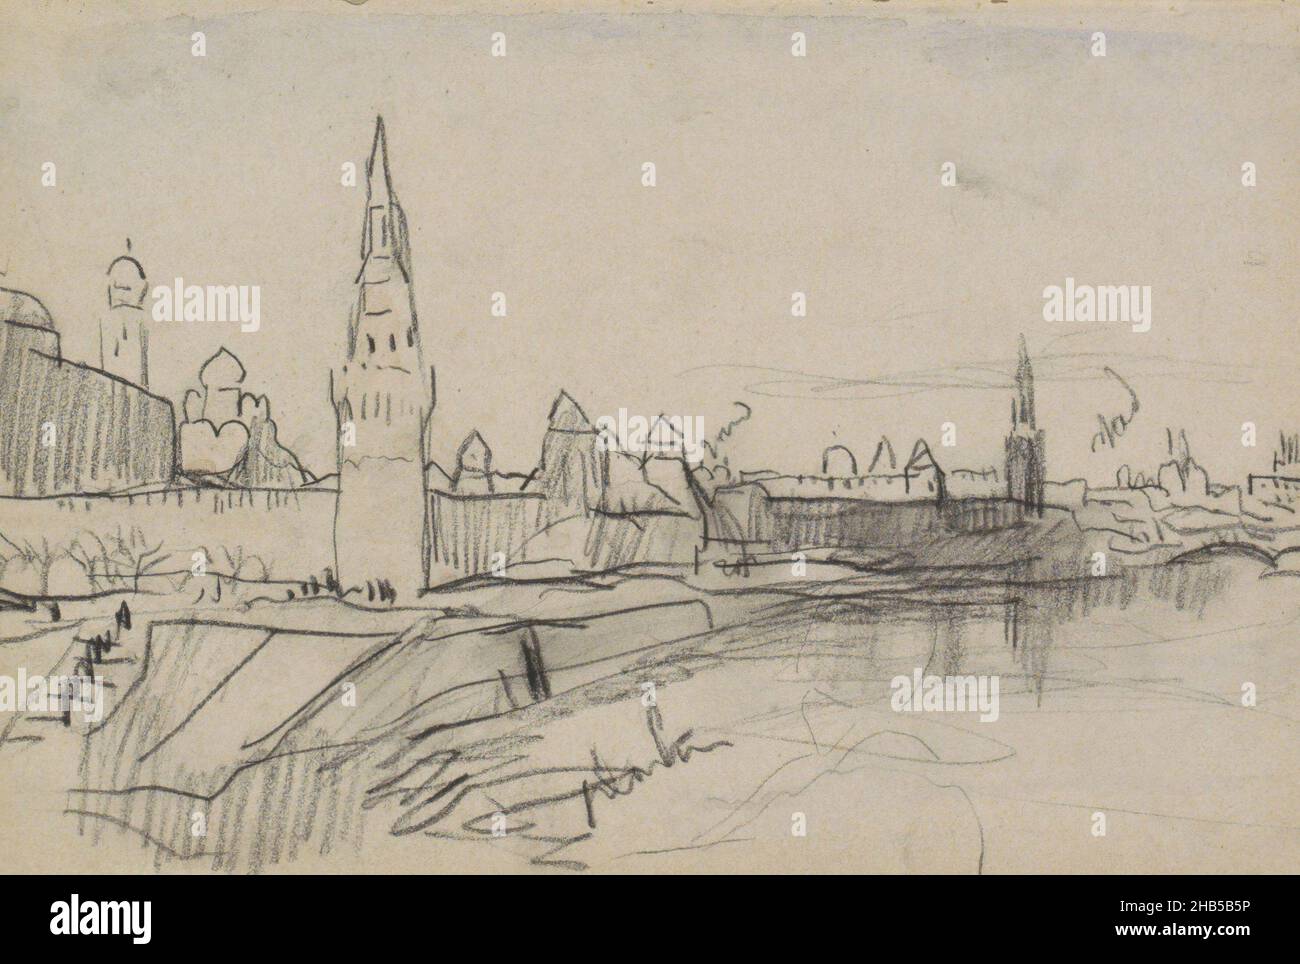 Seite 46 aus einem Skizzenbuch mit 45 Seiten, der Kreml von Moskau am Moskwa-Fluss, Zeichner: Marius Bauer, Moskou, 1896, Marius Bauer, 1896 Stockfoto